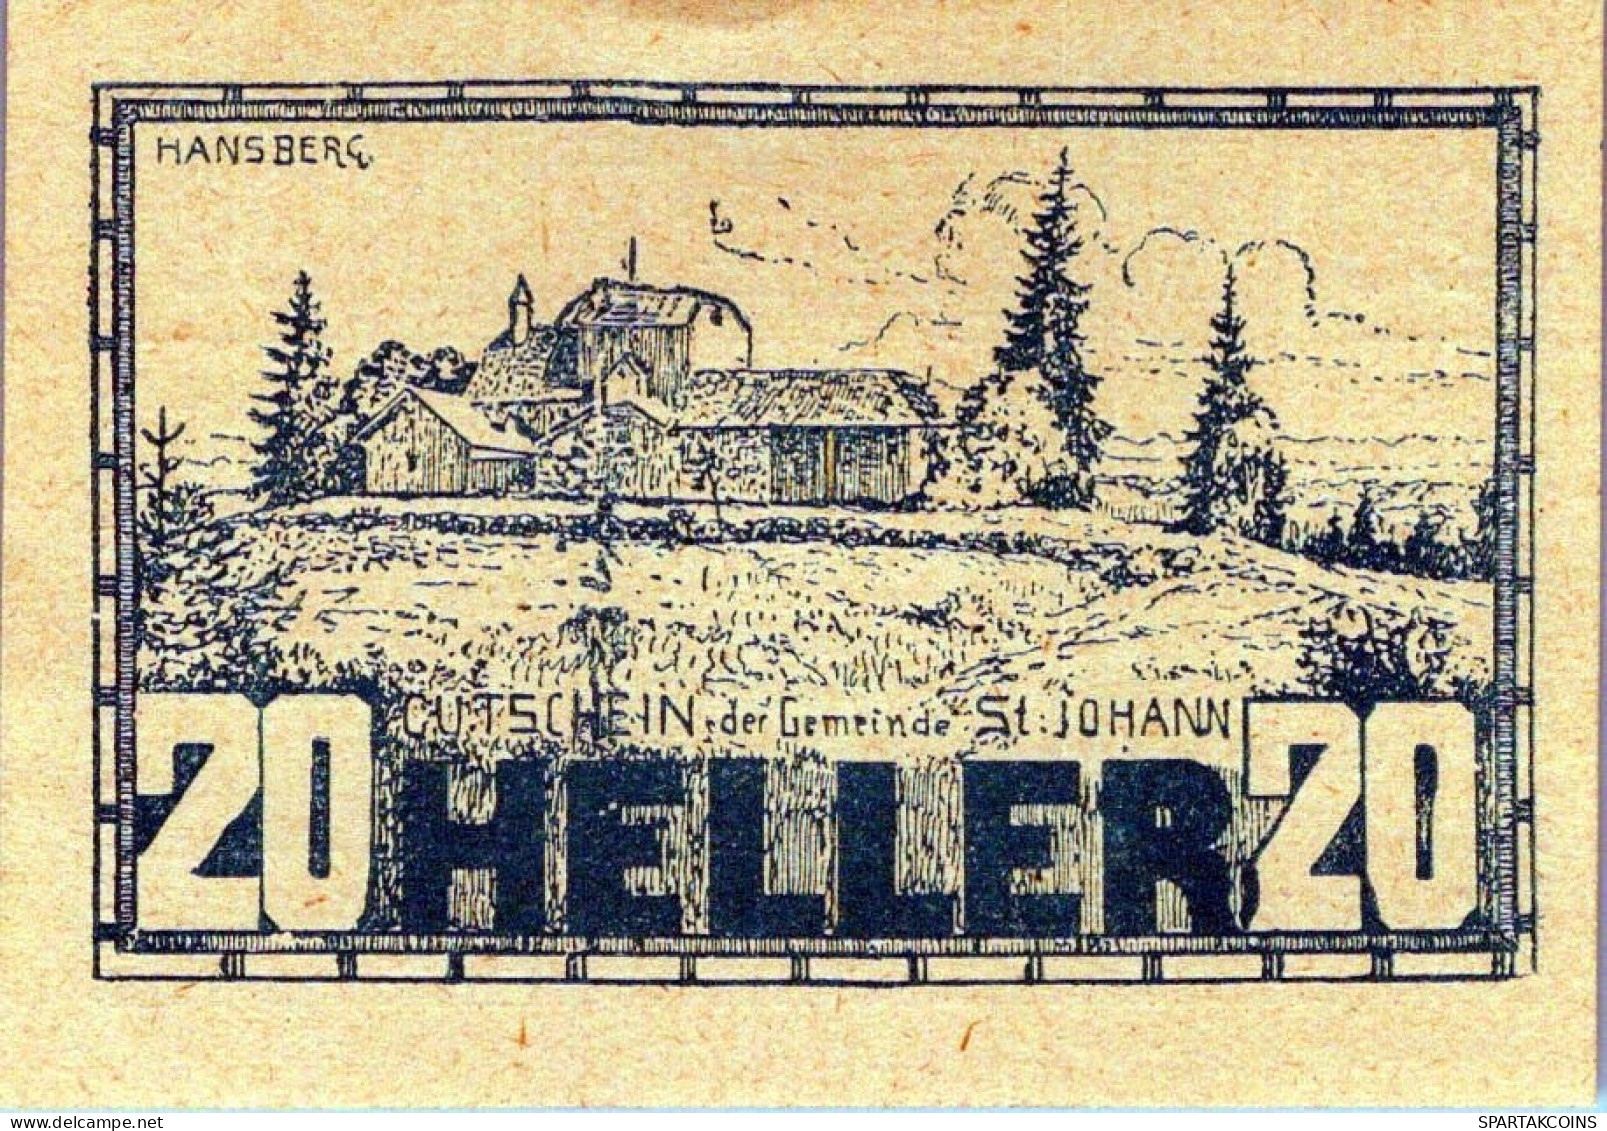 20 HELLER 1920 Stadt SANKT JOHANN AM WIMBERG Oberösterreich Österreich Notgeld Papiergeld Banknote #PG707 - [11] Emissions Locales